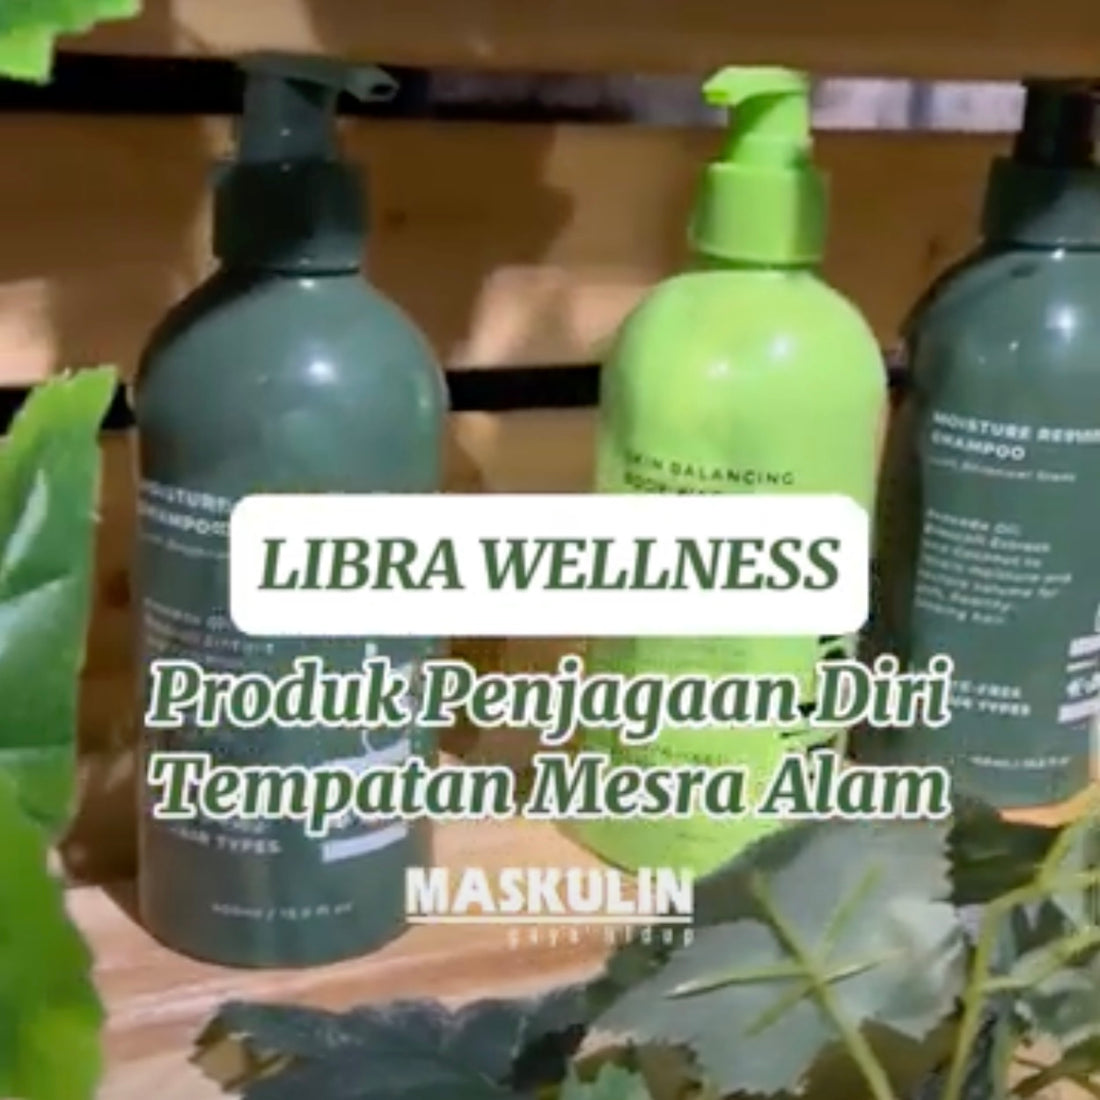 MASKULIN: Libra Wellness - Produk Penjagaan Diri Tempatan Mesra Alam